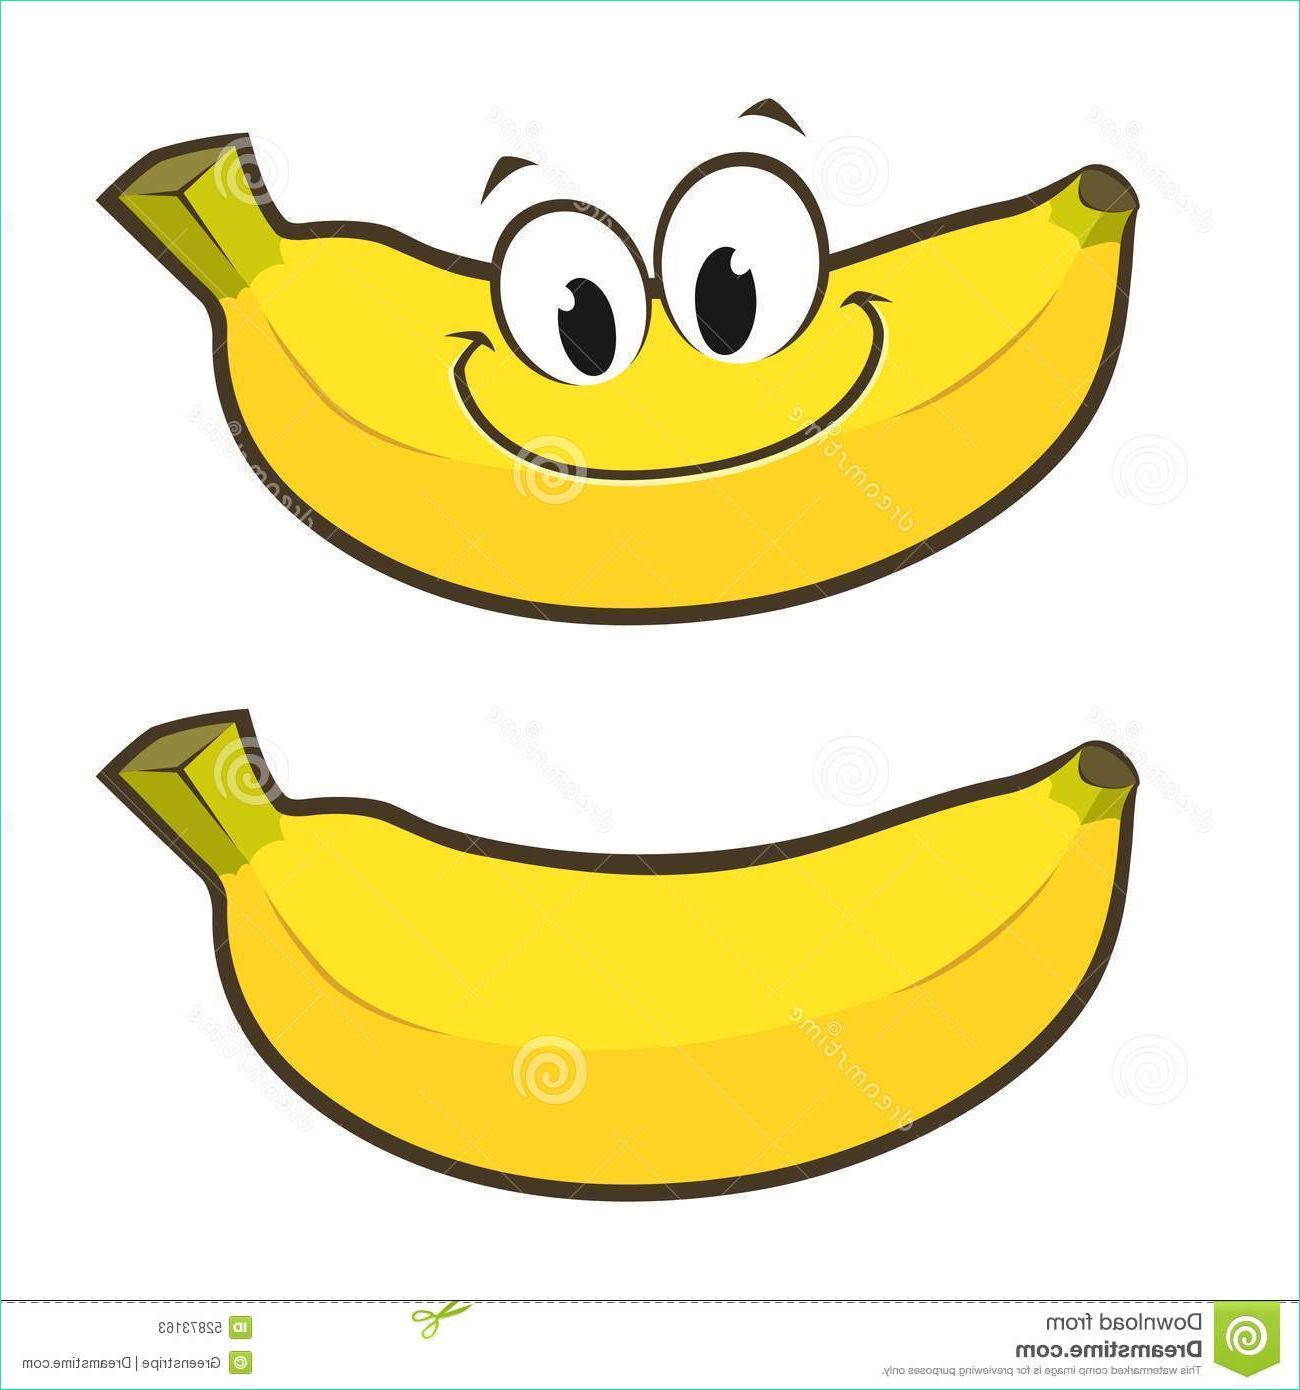 Dessin Banane Impressionnant Collection Objets De Dessin Animé De La Banane 3d Au Dessus De Blanc